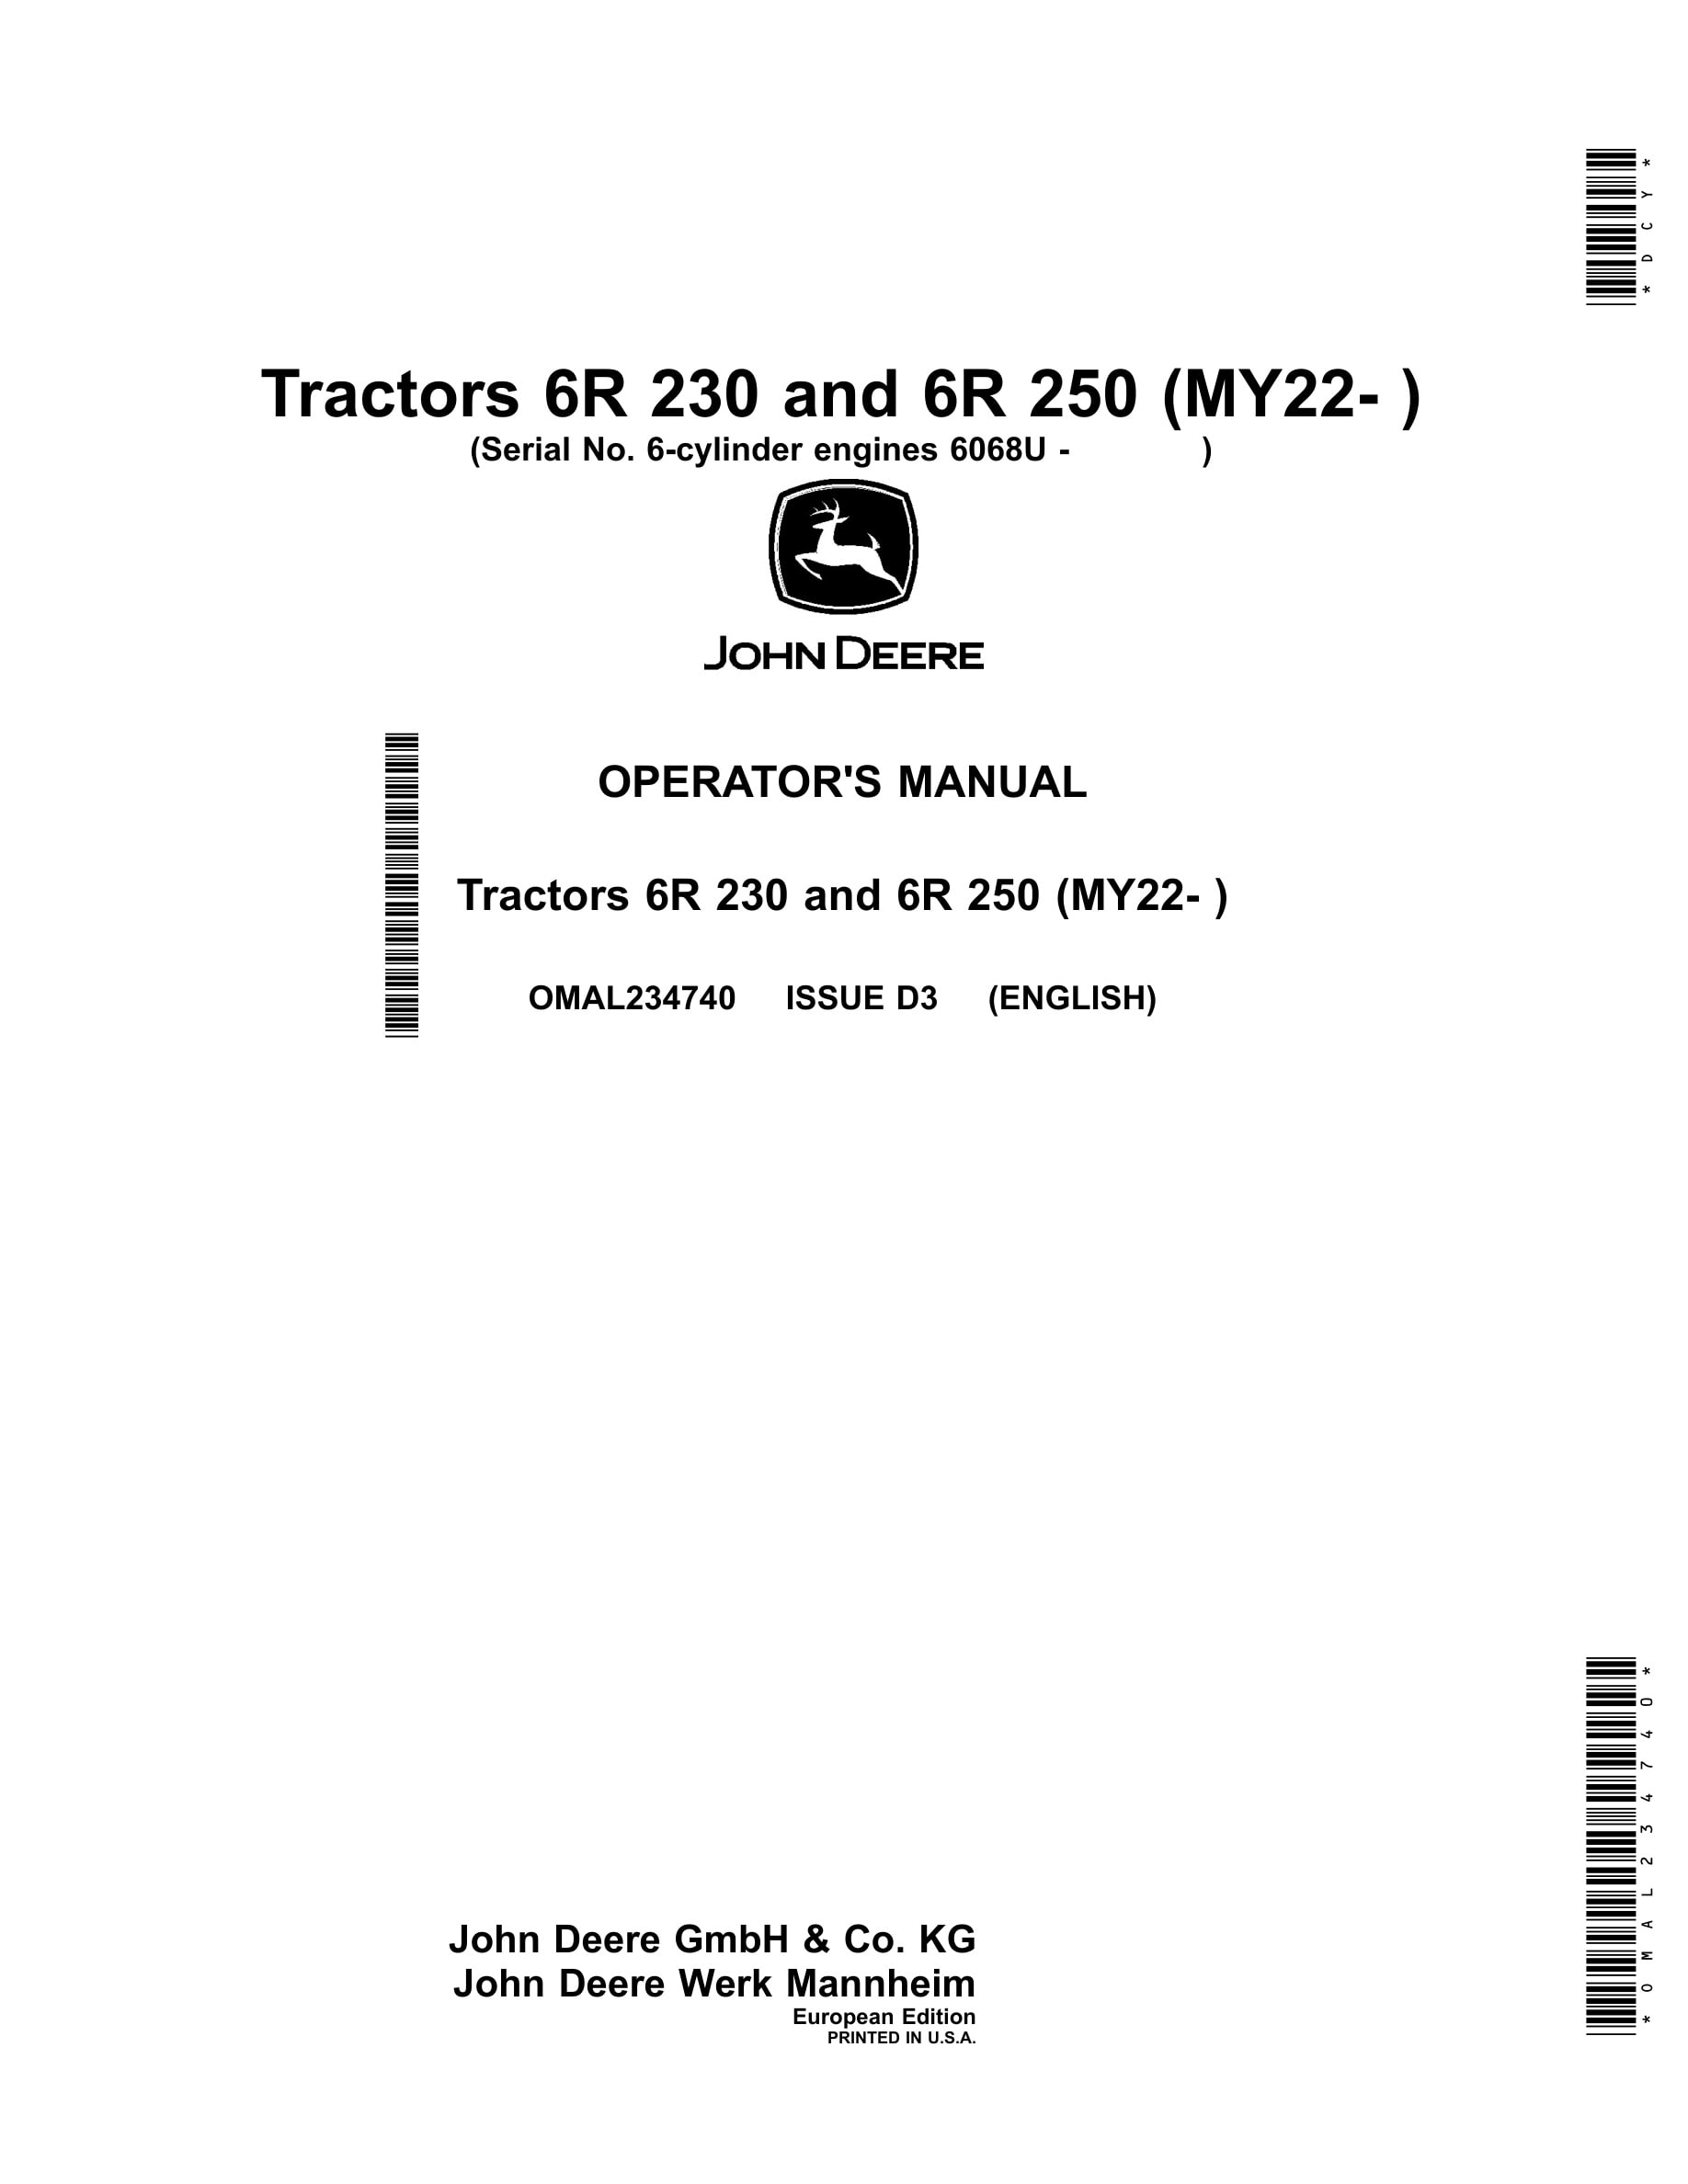 John Deere 6r 230 And 6r 250 (my22- ) Tractors Operator Manuals OMAL234740-1